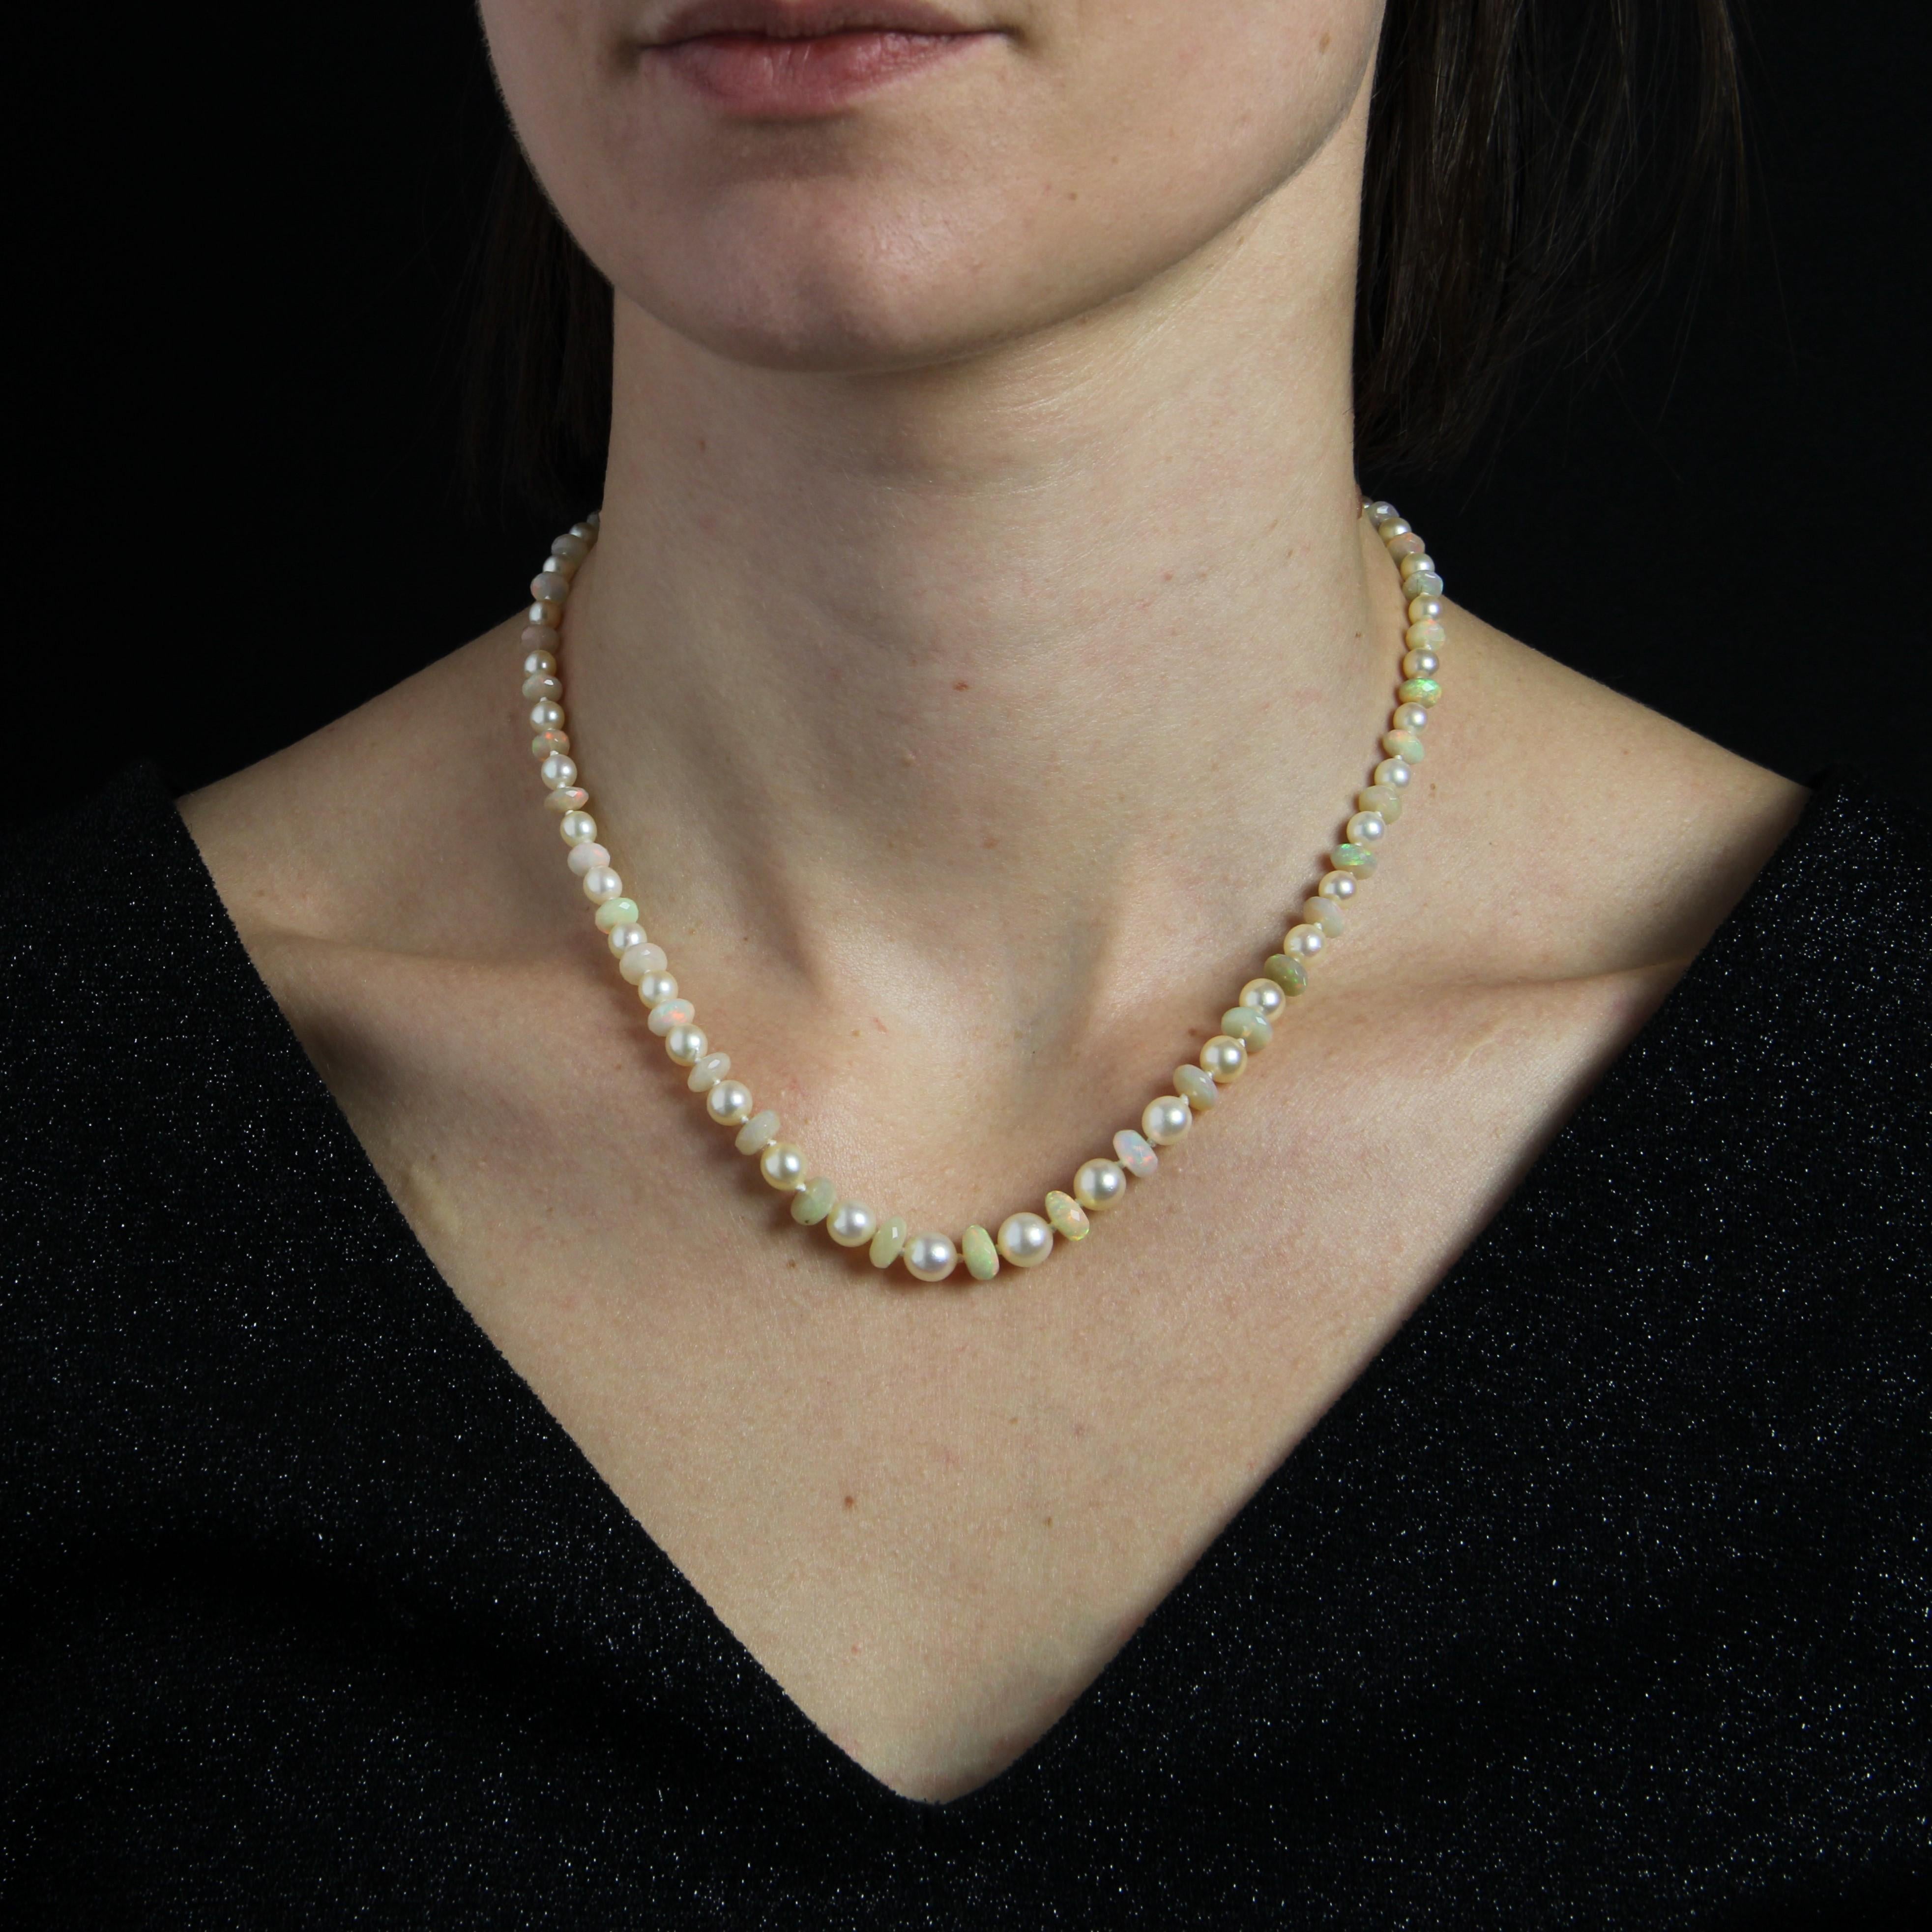 Baume Creation.
Collier de perles de culture orientale blanc nacré, séparées par des perles d'opale plates et facettées. Le fermoir est en or blanc 18 carats, poinçon tête d'aigle, cliquet avec chaîne de sécurité. Il est rectangulaire avec des côtés